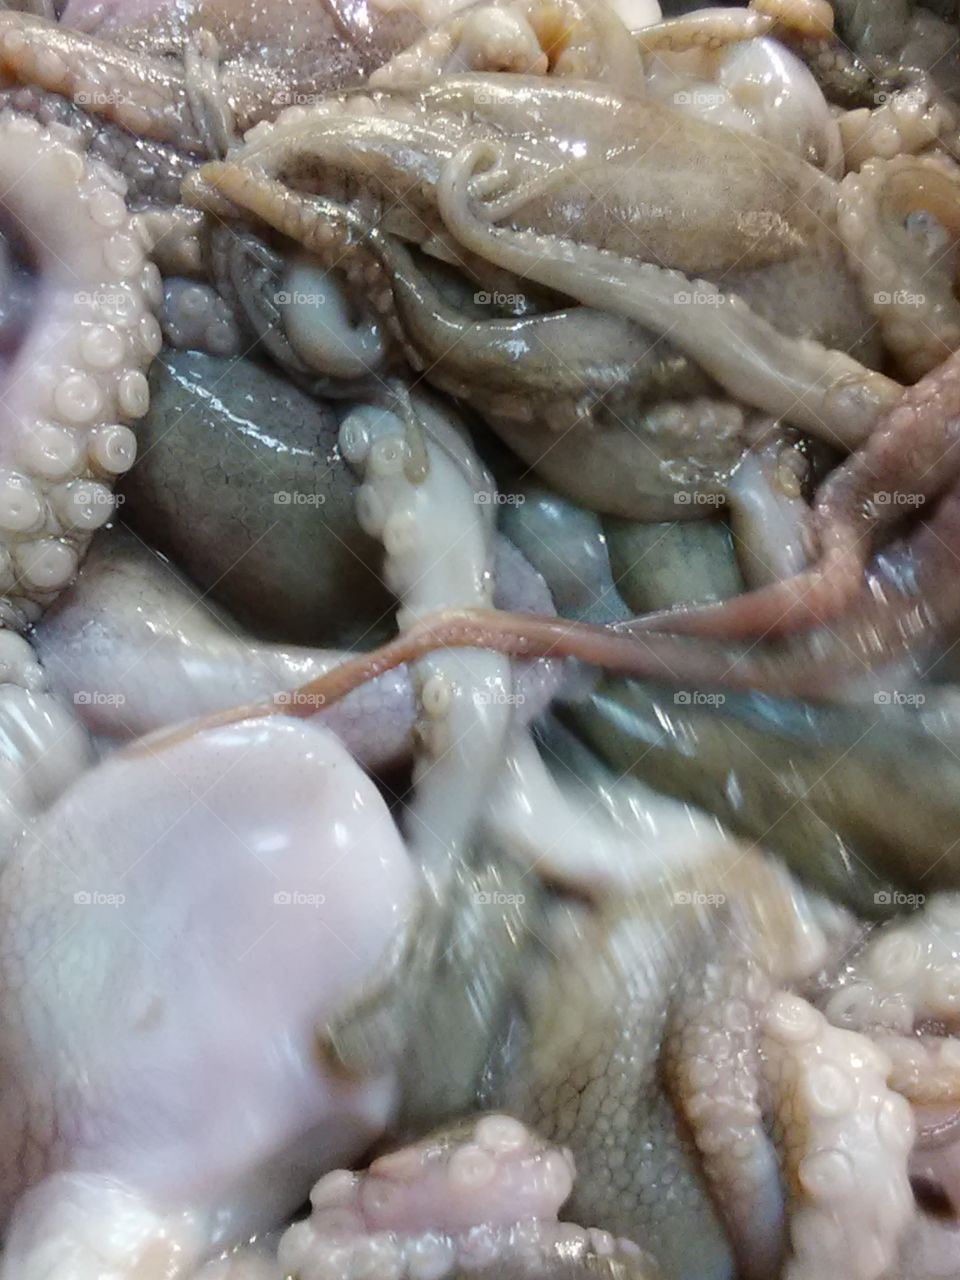 octopus for dinner